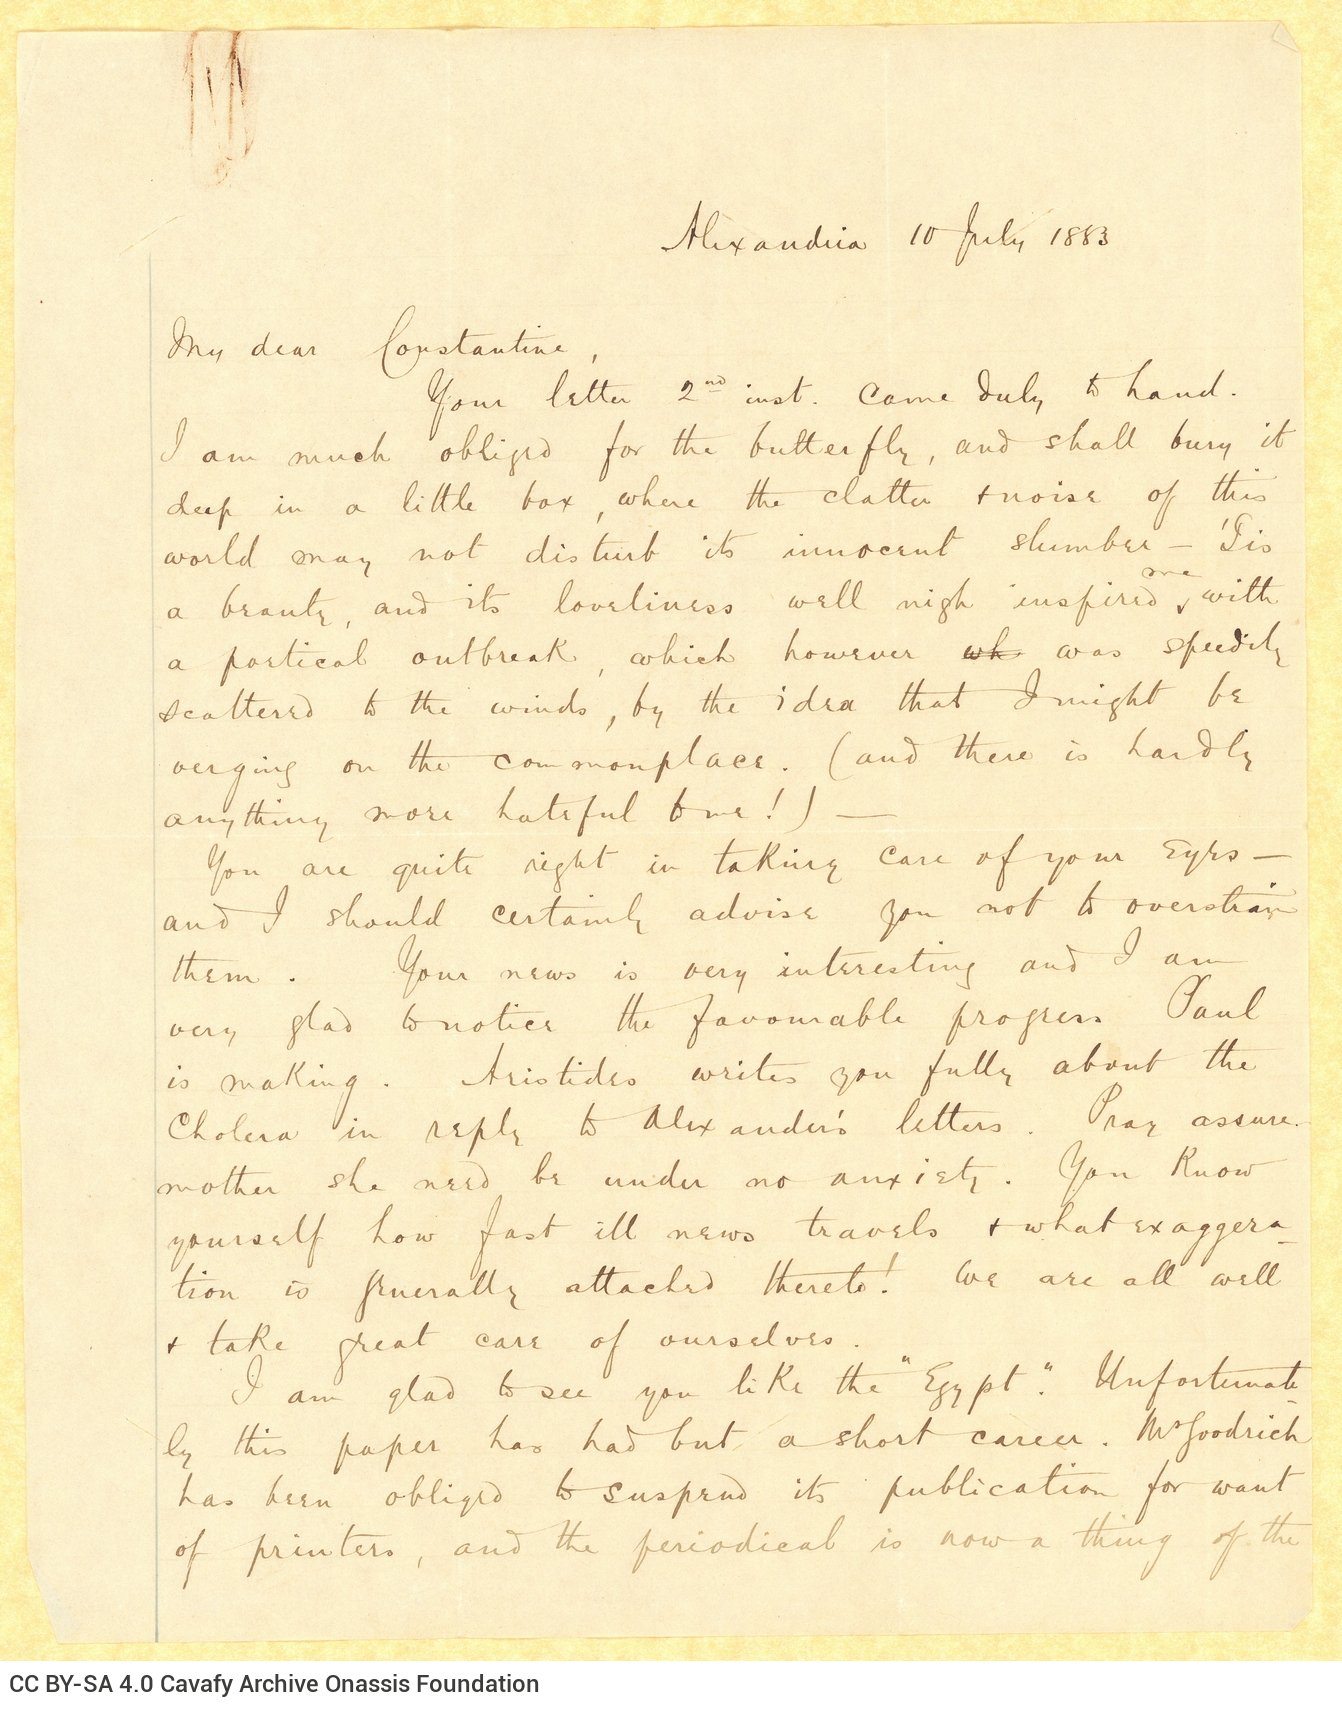 Χειρόγραφη επιστολή του Τζων Καβάφη προς τον Κ. Π. Καβάφη στη μία όψ